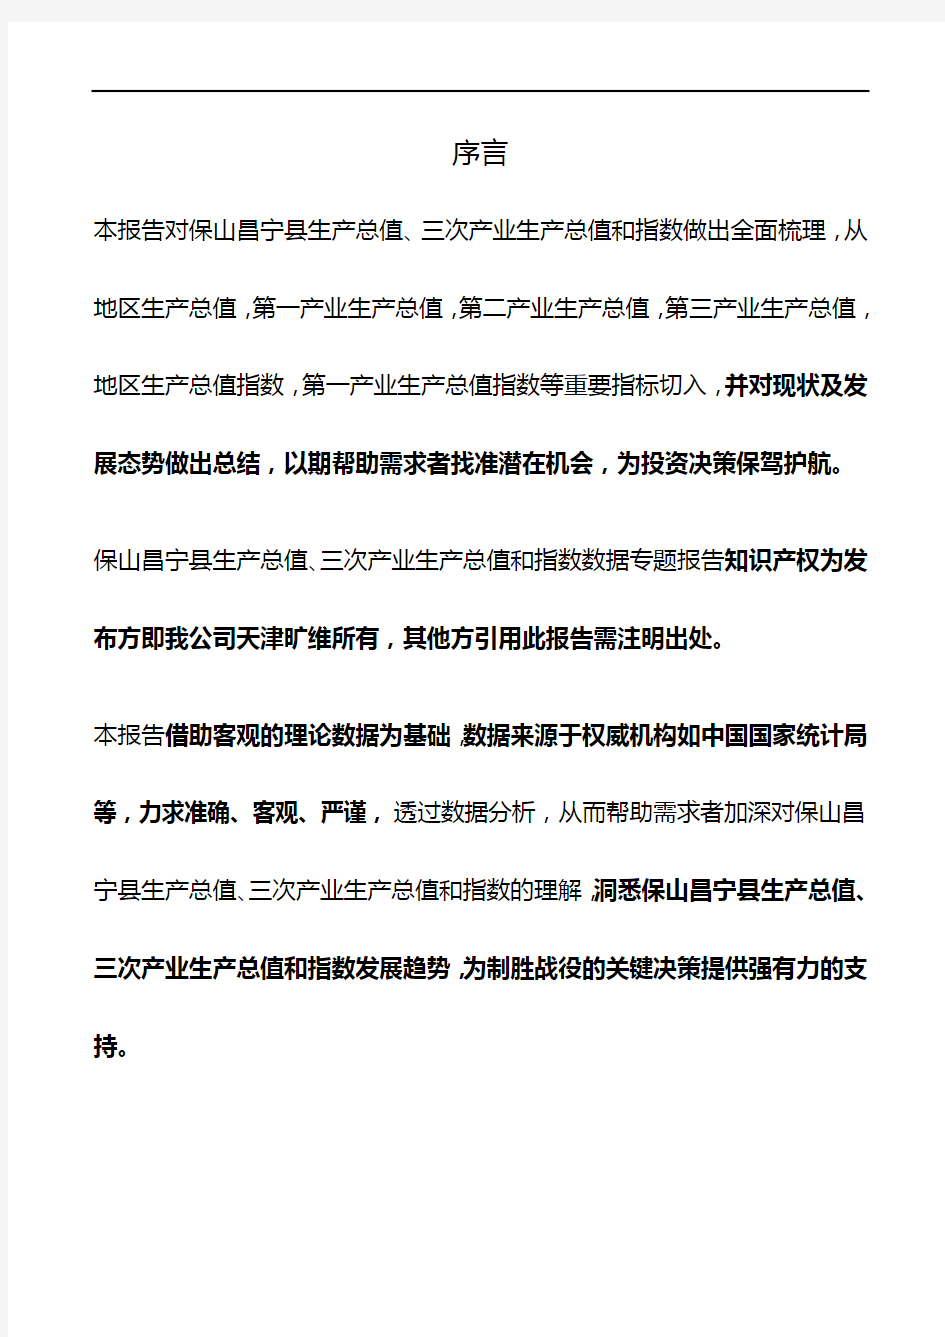 云南省保山昌宁县生产总值、三次产业生产总值和指数3年数据专题报告2020版